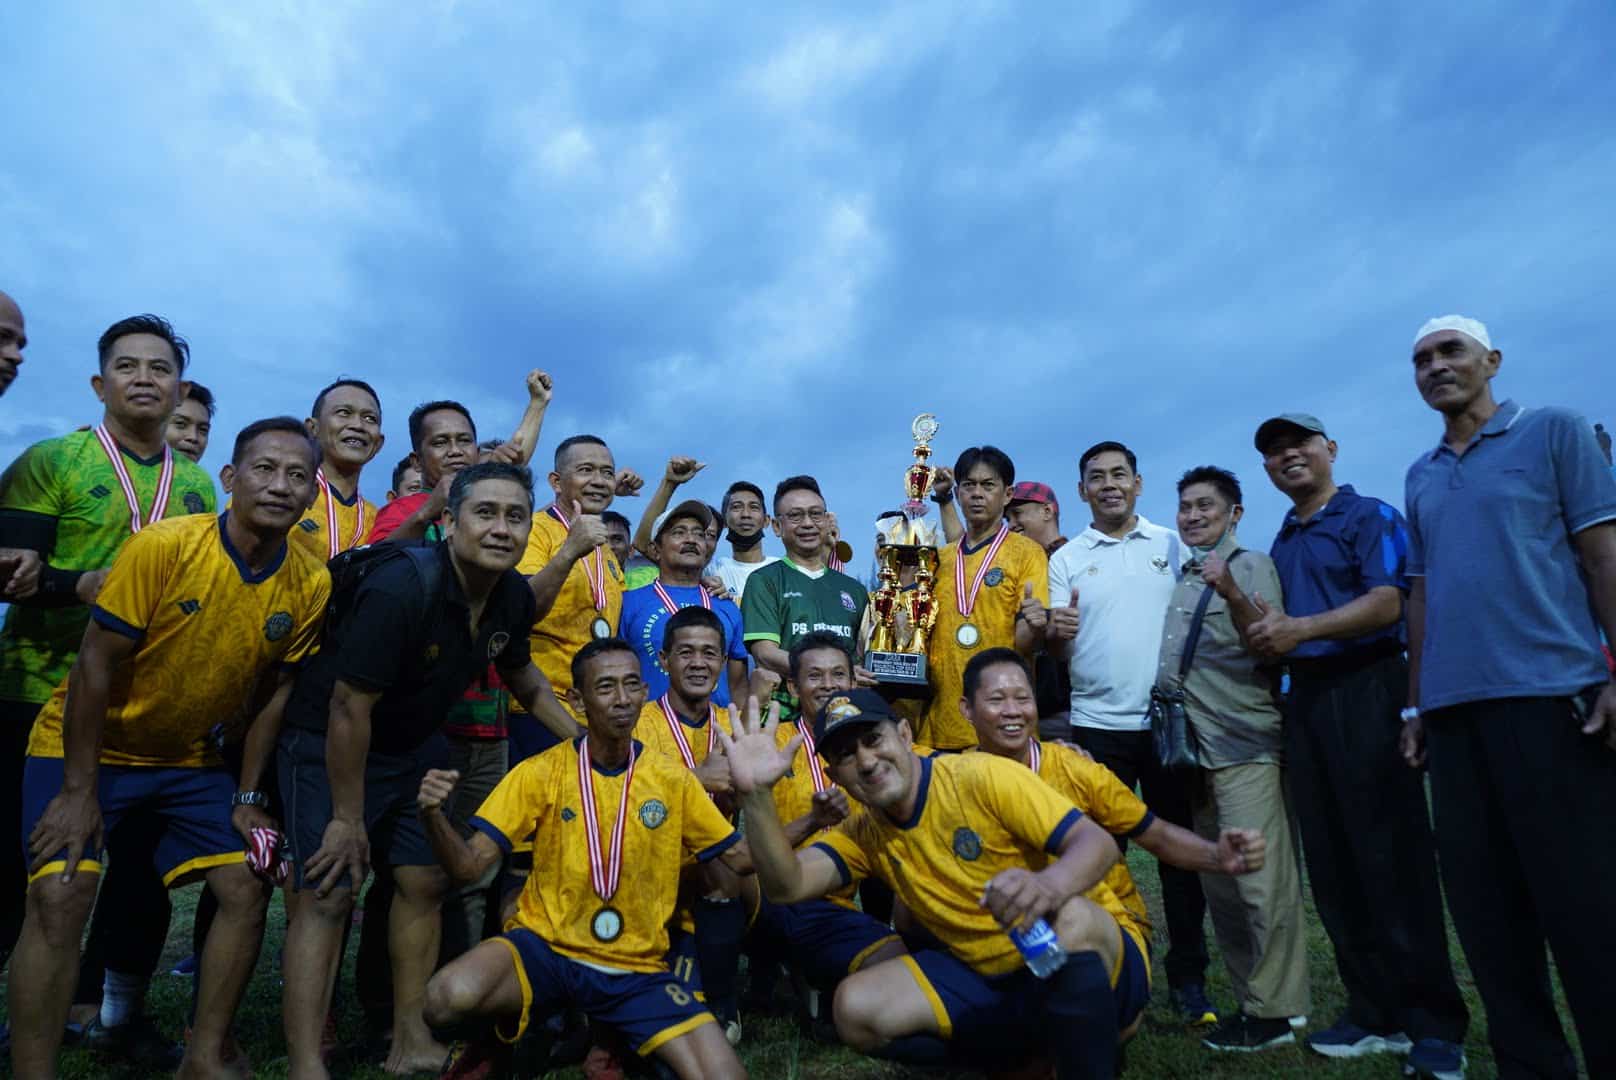 Wali Kota Pontianak, Edi Rusdi Kamtono berfoto bersama pemenang kejuaraan "Piala Wali Kota Pontianak Turnamen Sepak Bola U-45". (Prokopim For KalbarOnline.com)